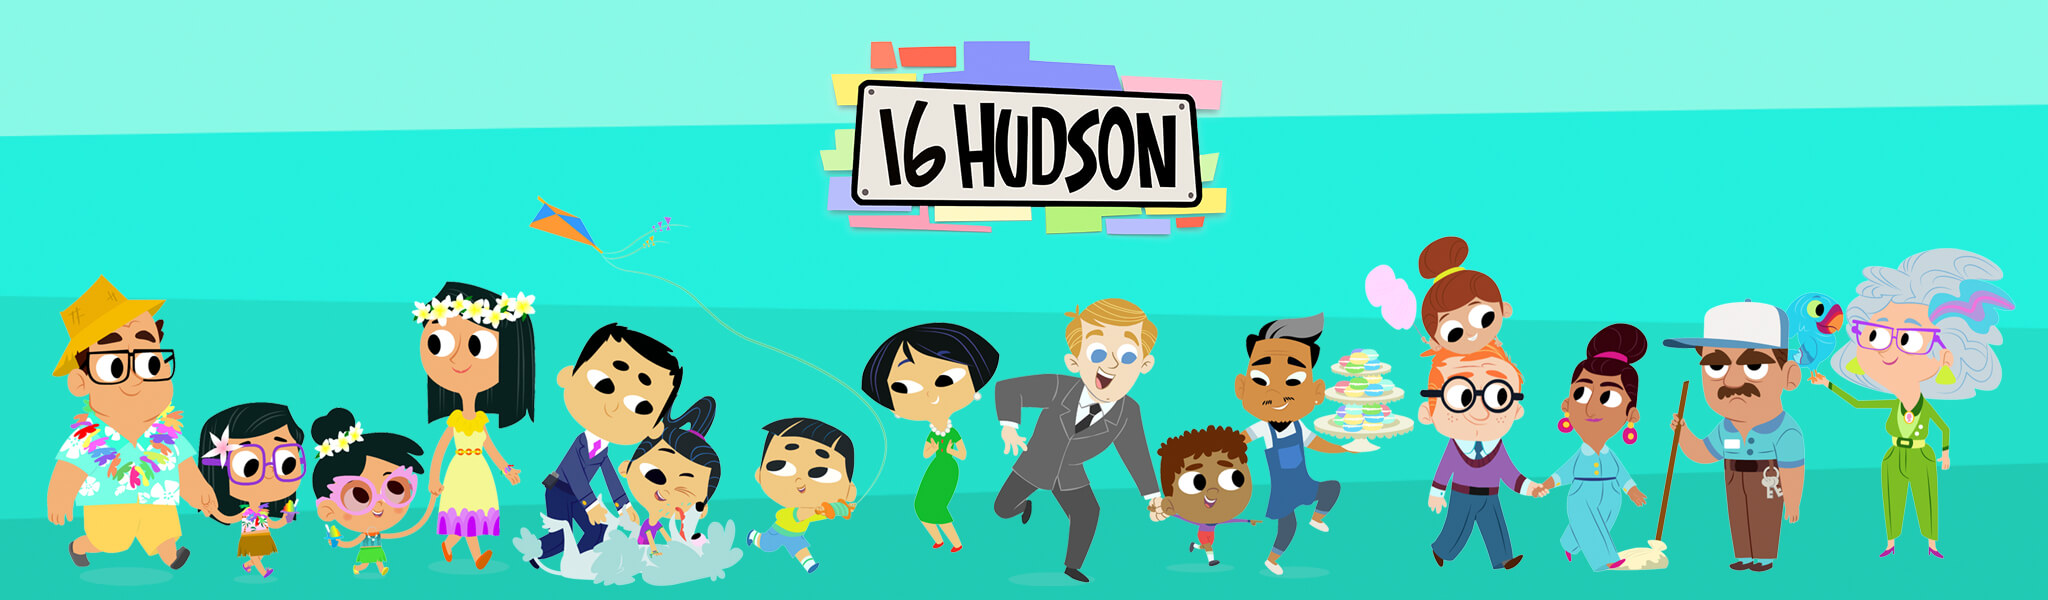 16 Hudson Season 1